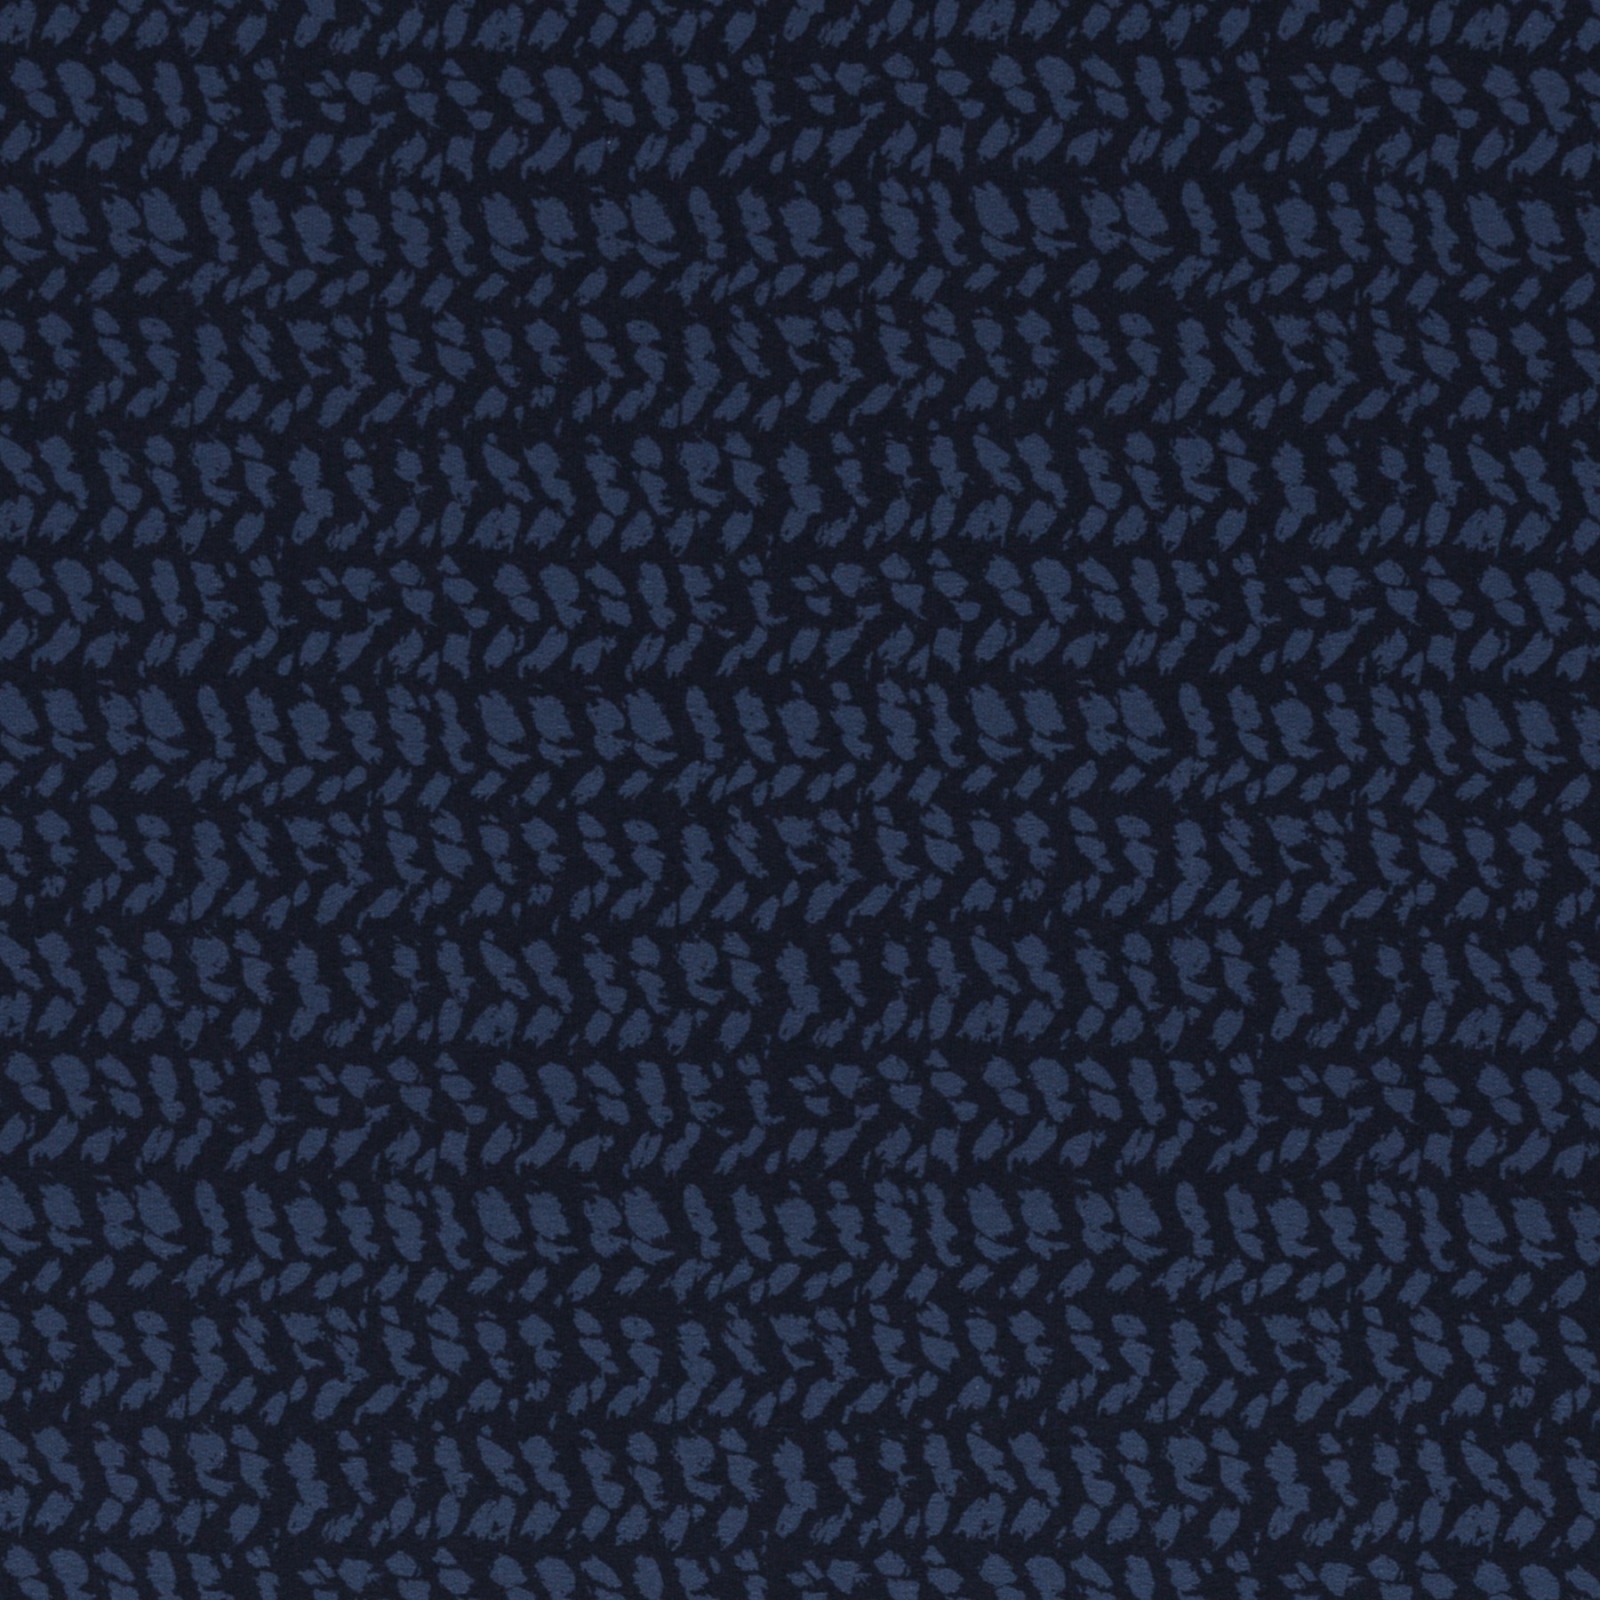 0,5m Sweat Herringbone Knit by Käselotti, navy 5